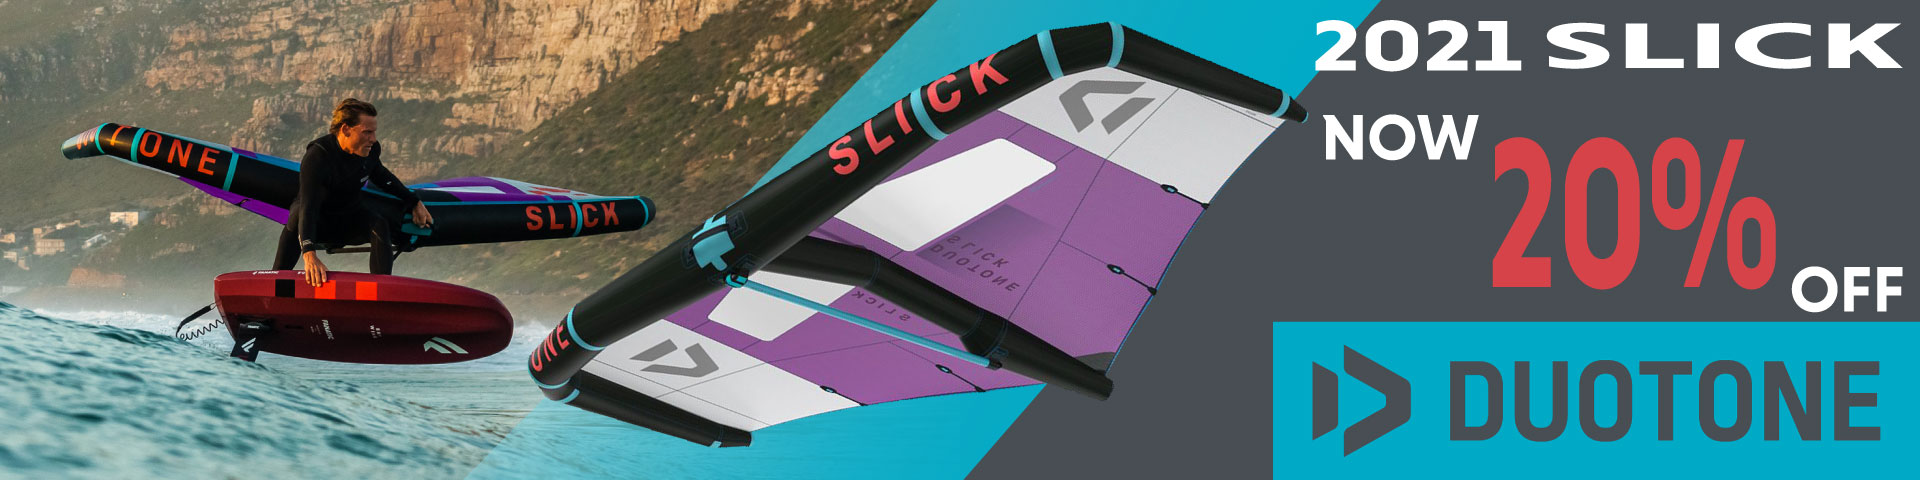 Kiteboarding Slide